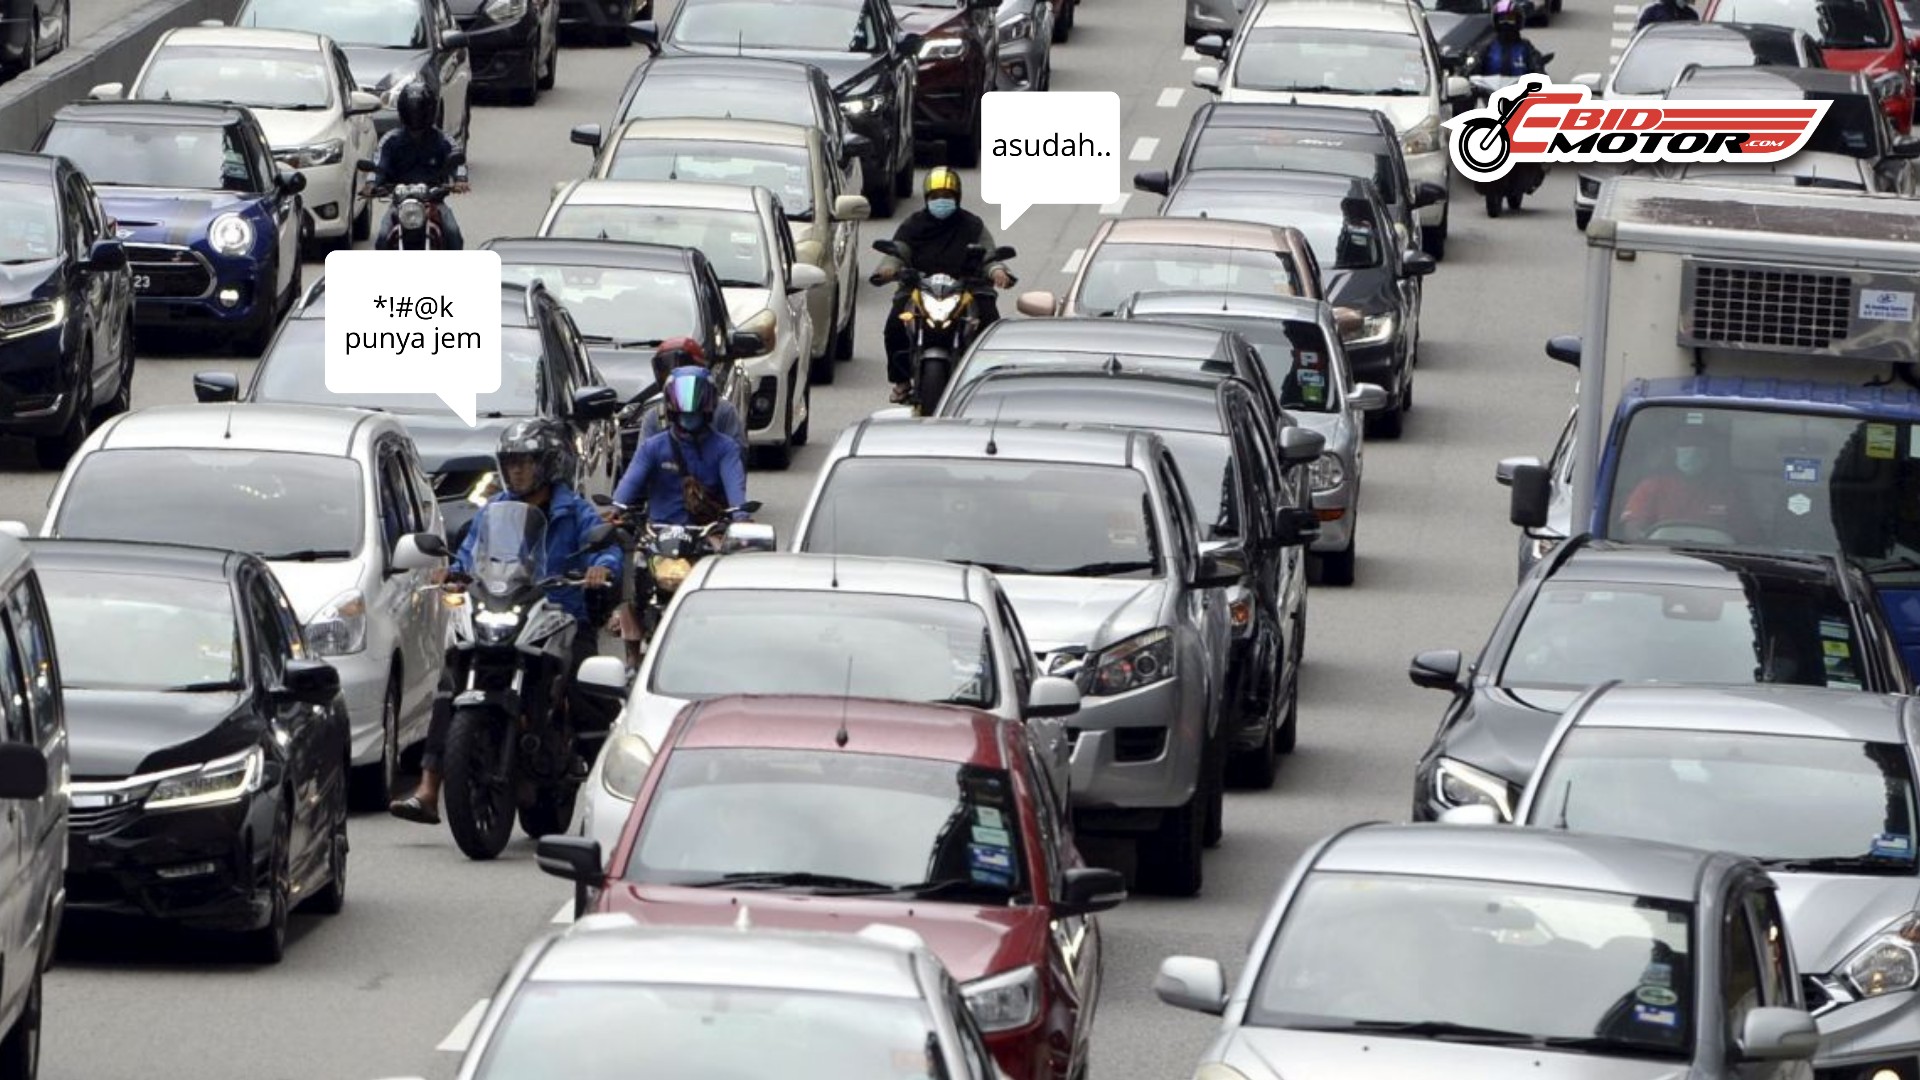 Hari-Hari Jalan Jam? Ini Cara 7 Bandar Utama Dunia Setelkan Masalah Traffic Jam Mereka.